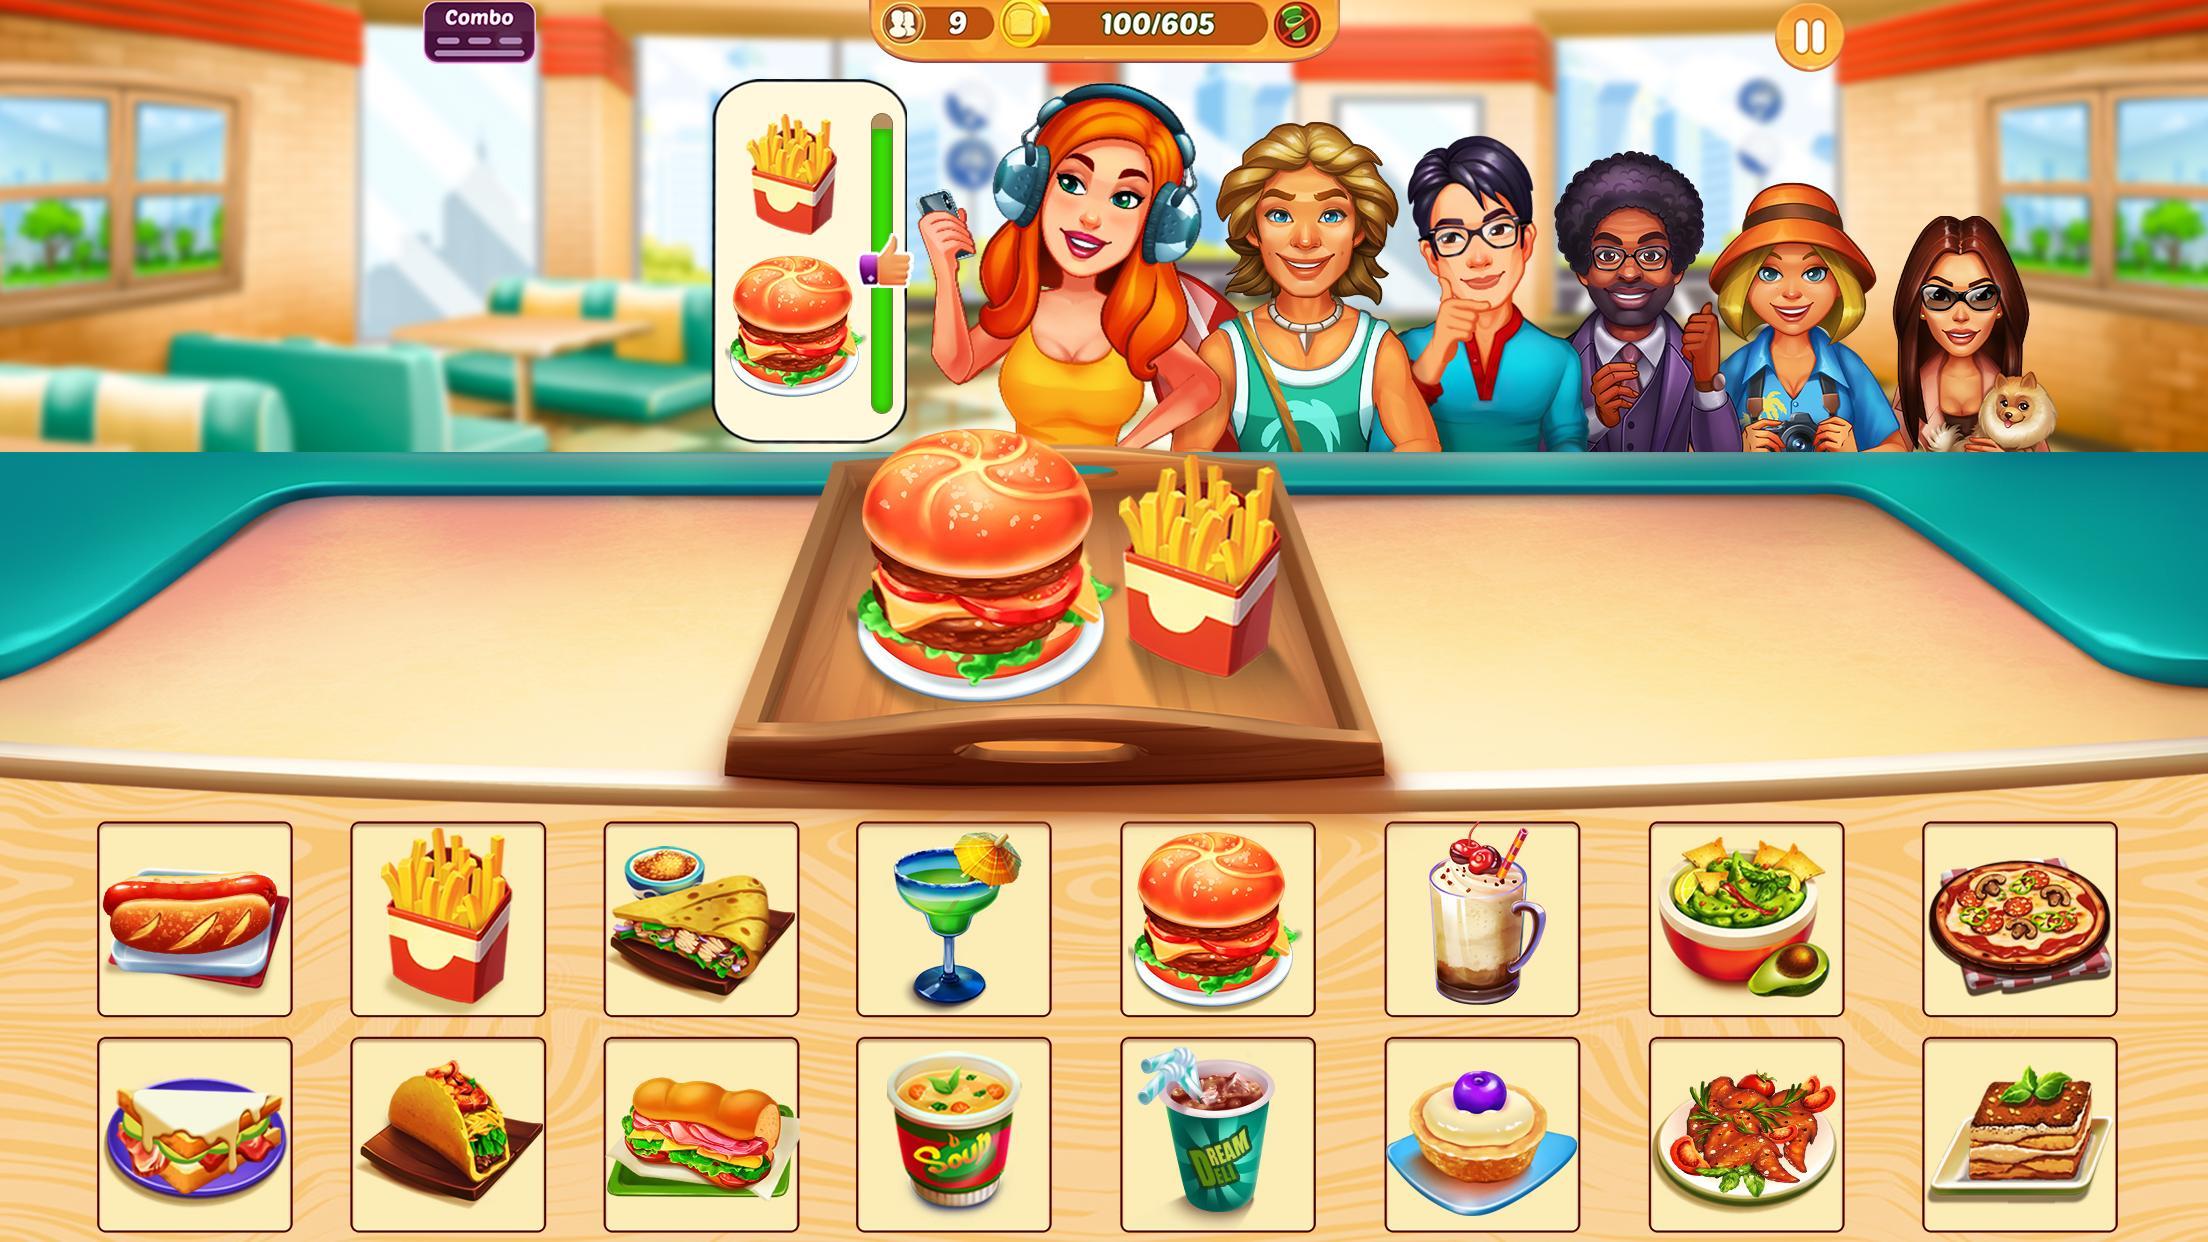 Screenshot 1 of Cook It - jogos de cozinhar 1.3.6